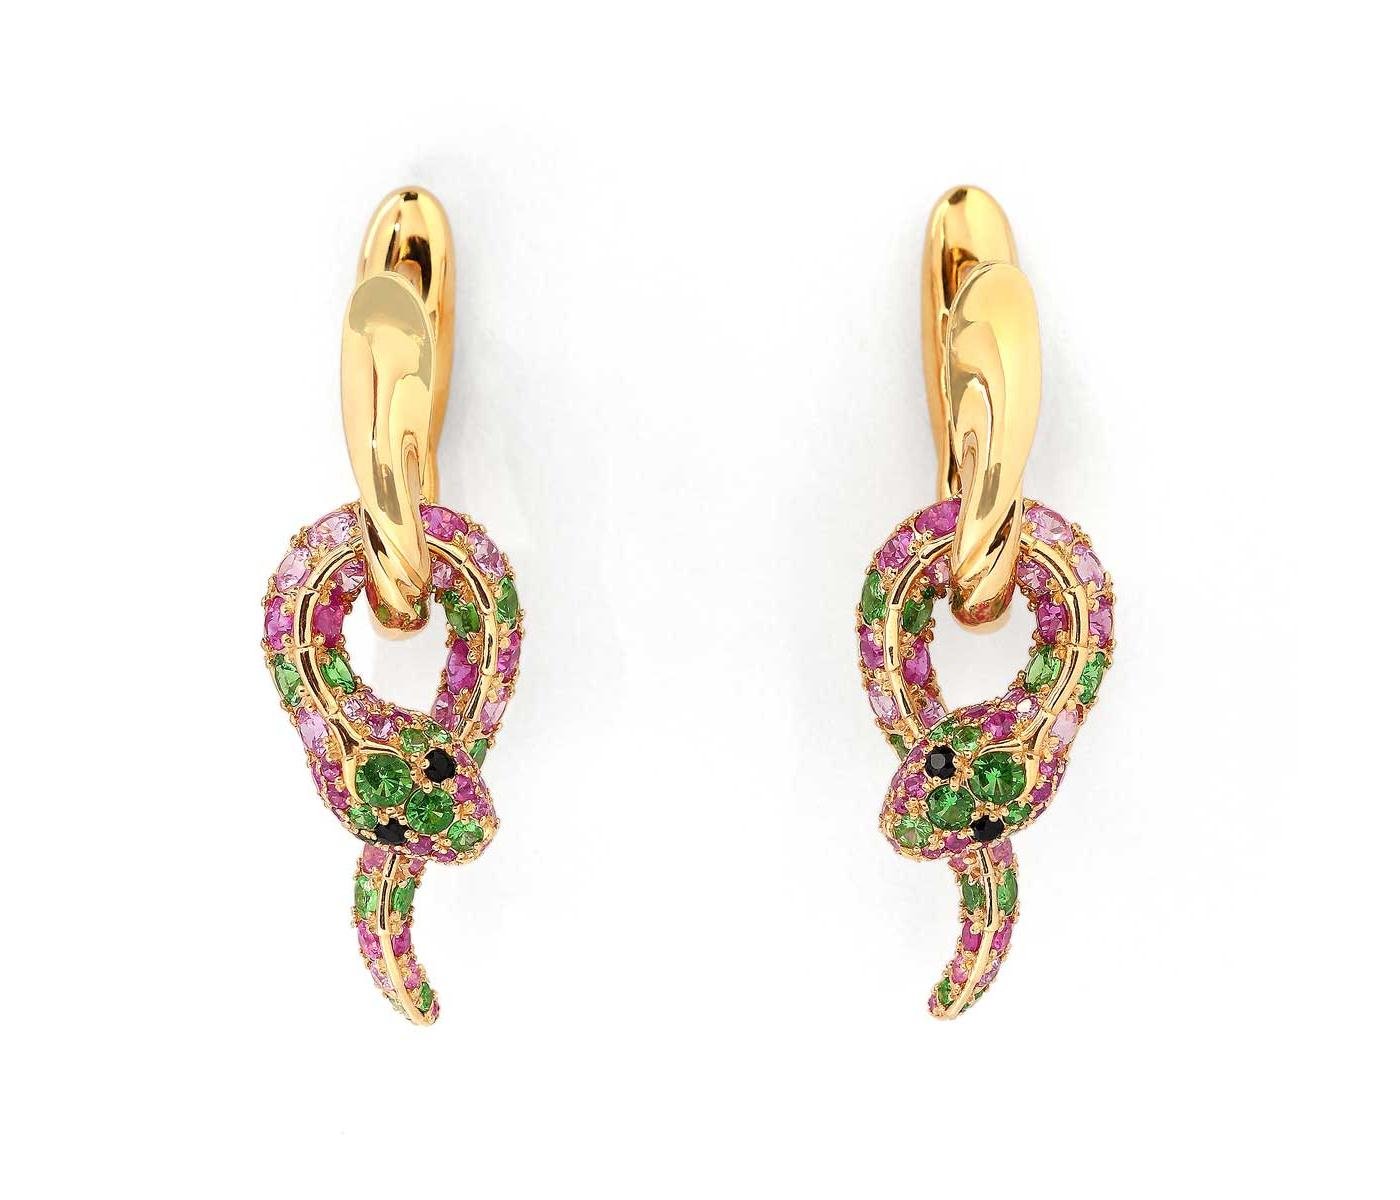 Earrings by Mousson Atelier